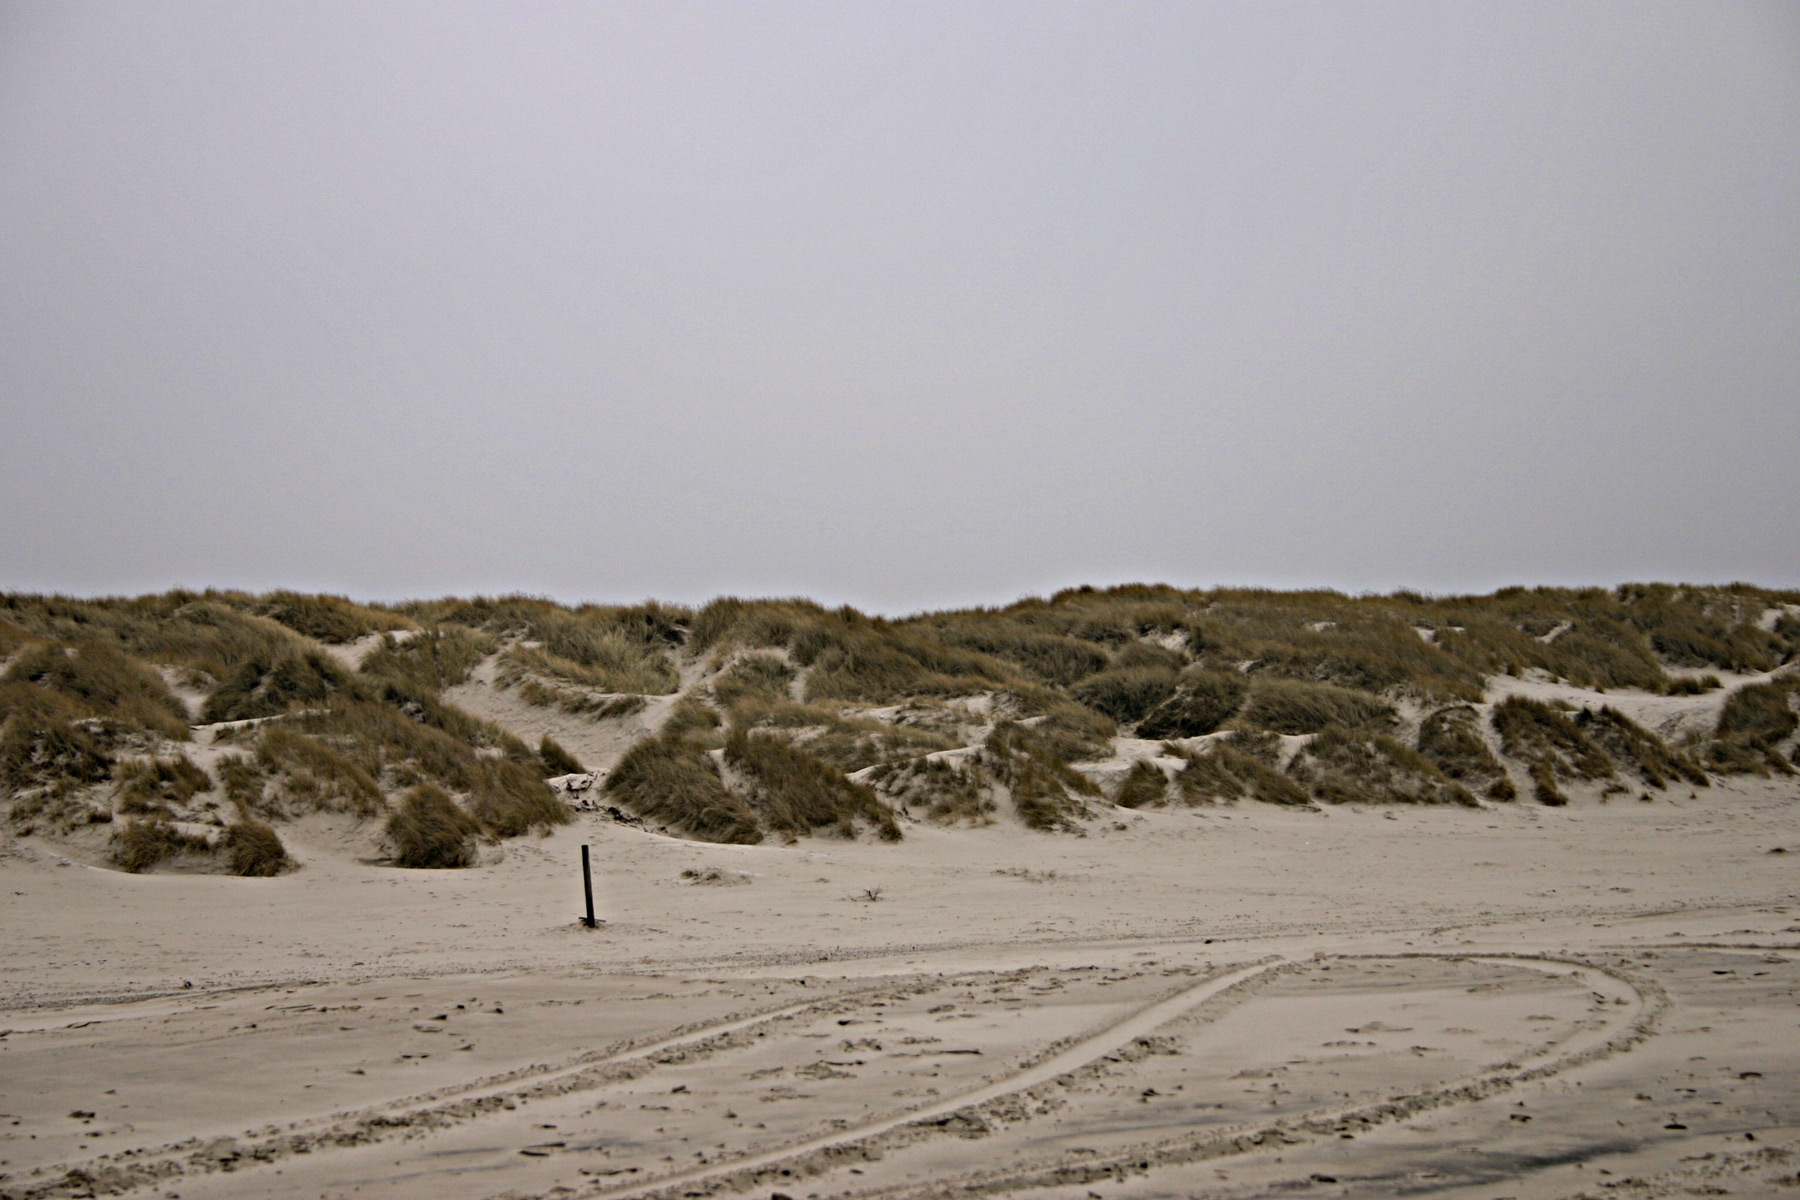 Sand dunes, Beach, Dune, Sand, Straws, HQ Photo